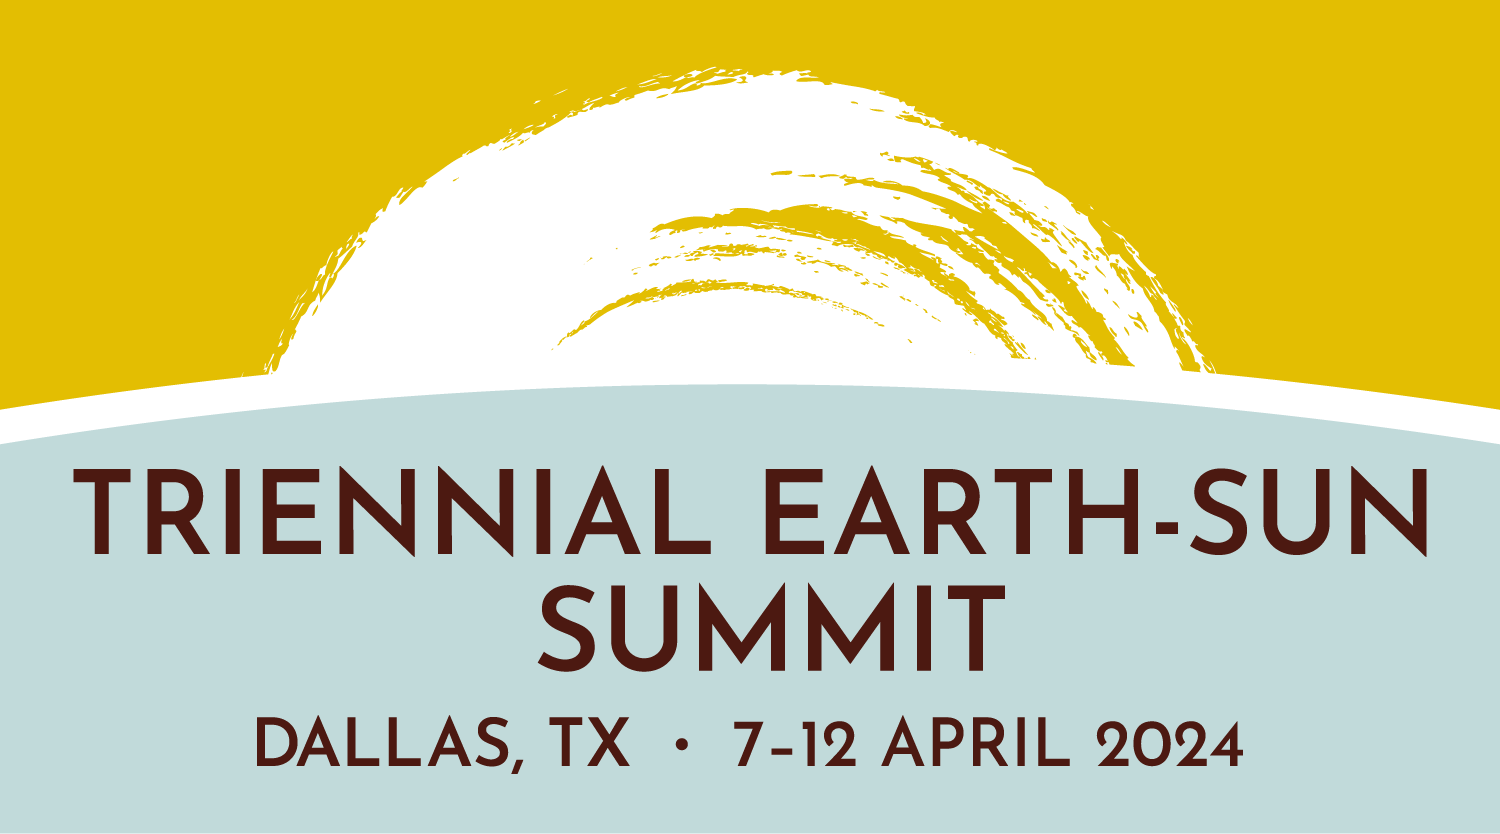 About Triennial EarthSun Summit 2024